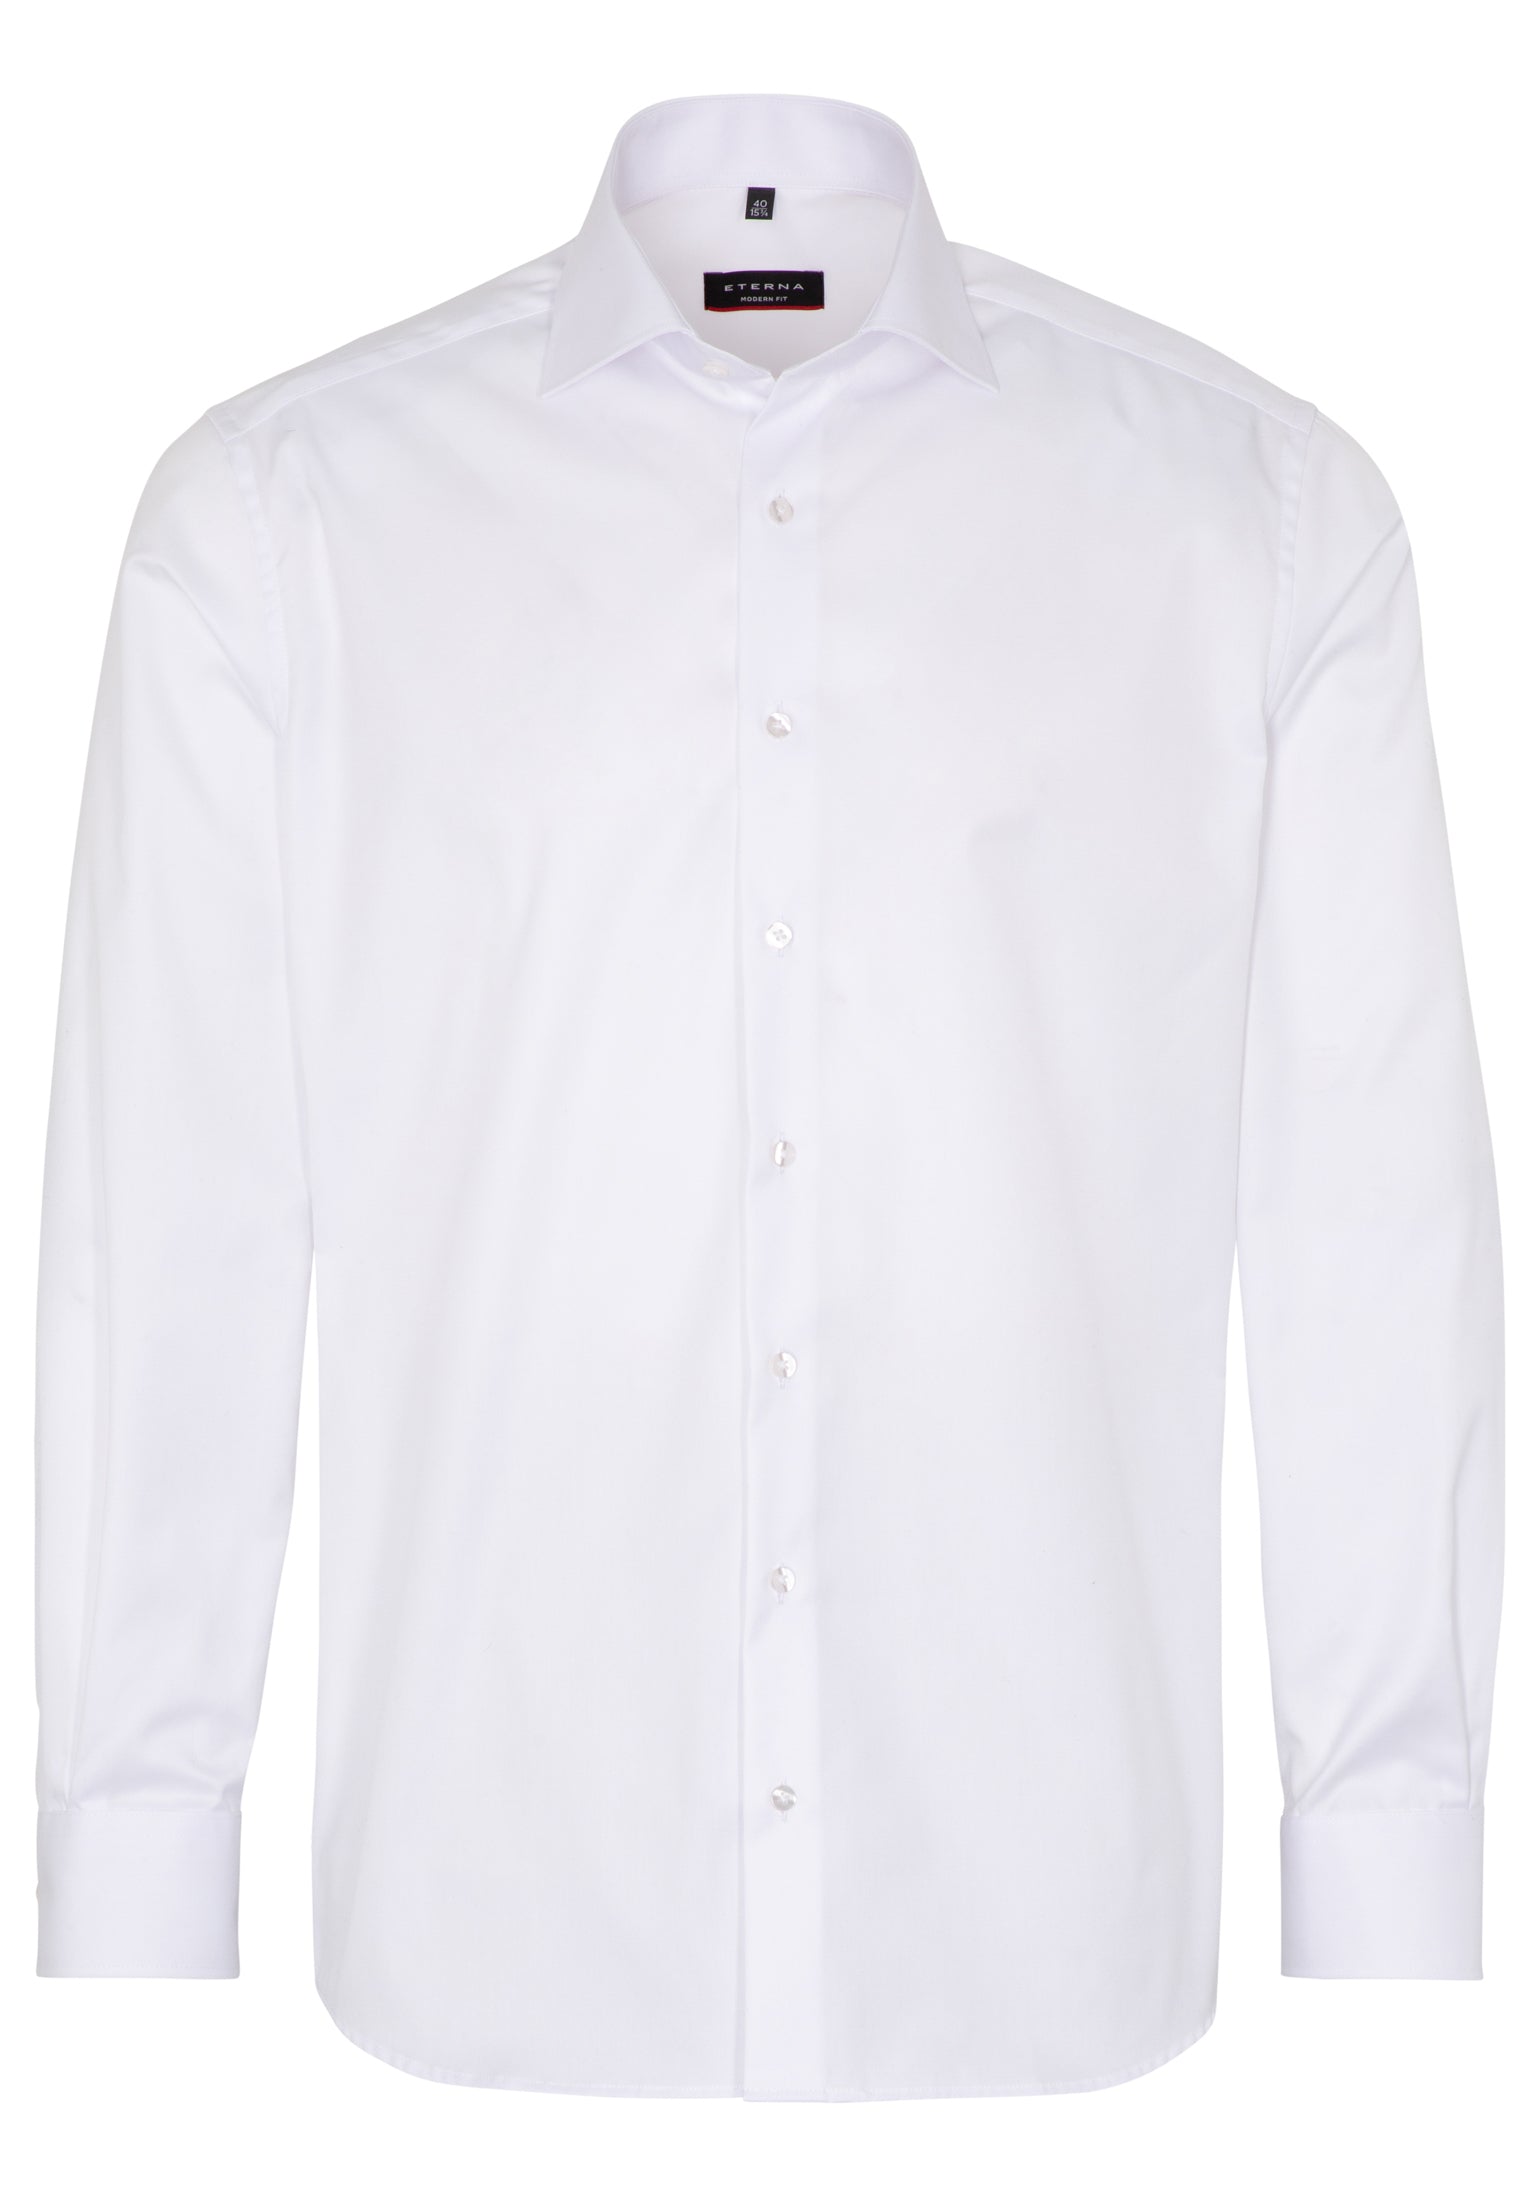 Eterna valkoinen kauluspaita "Modern fit cover shirt 8817"